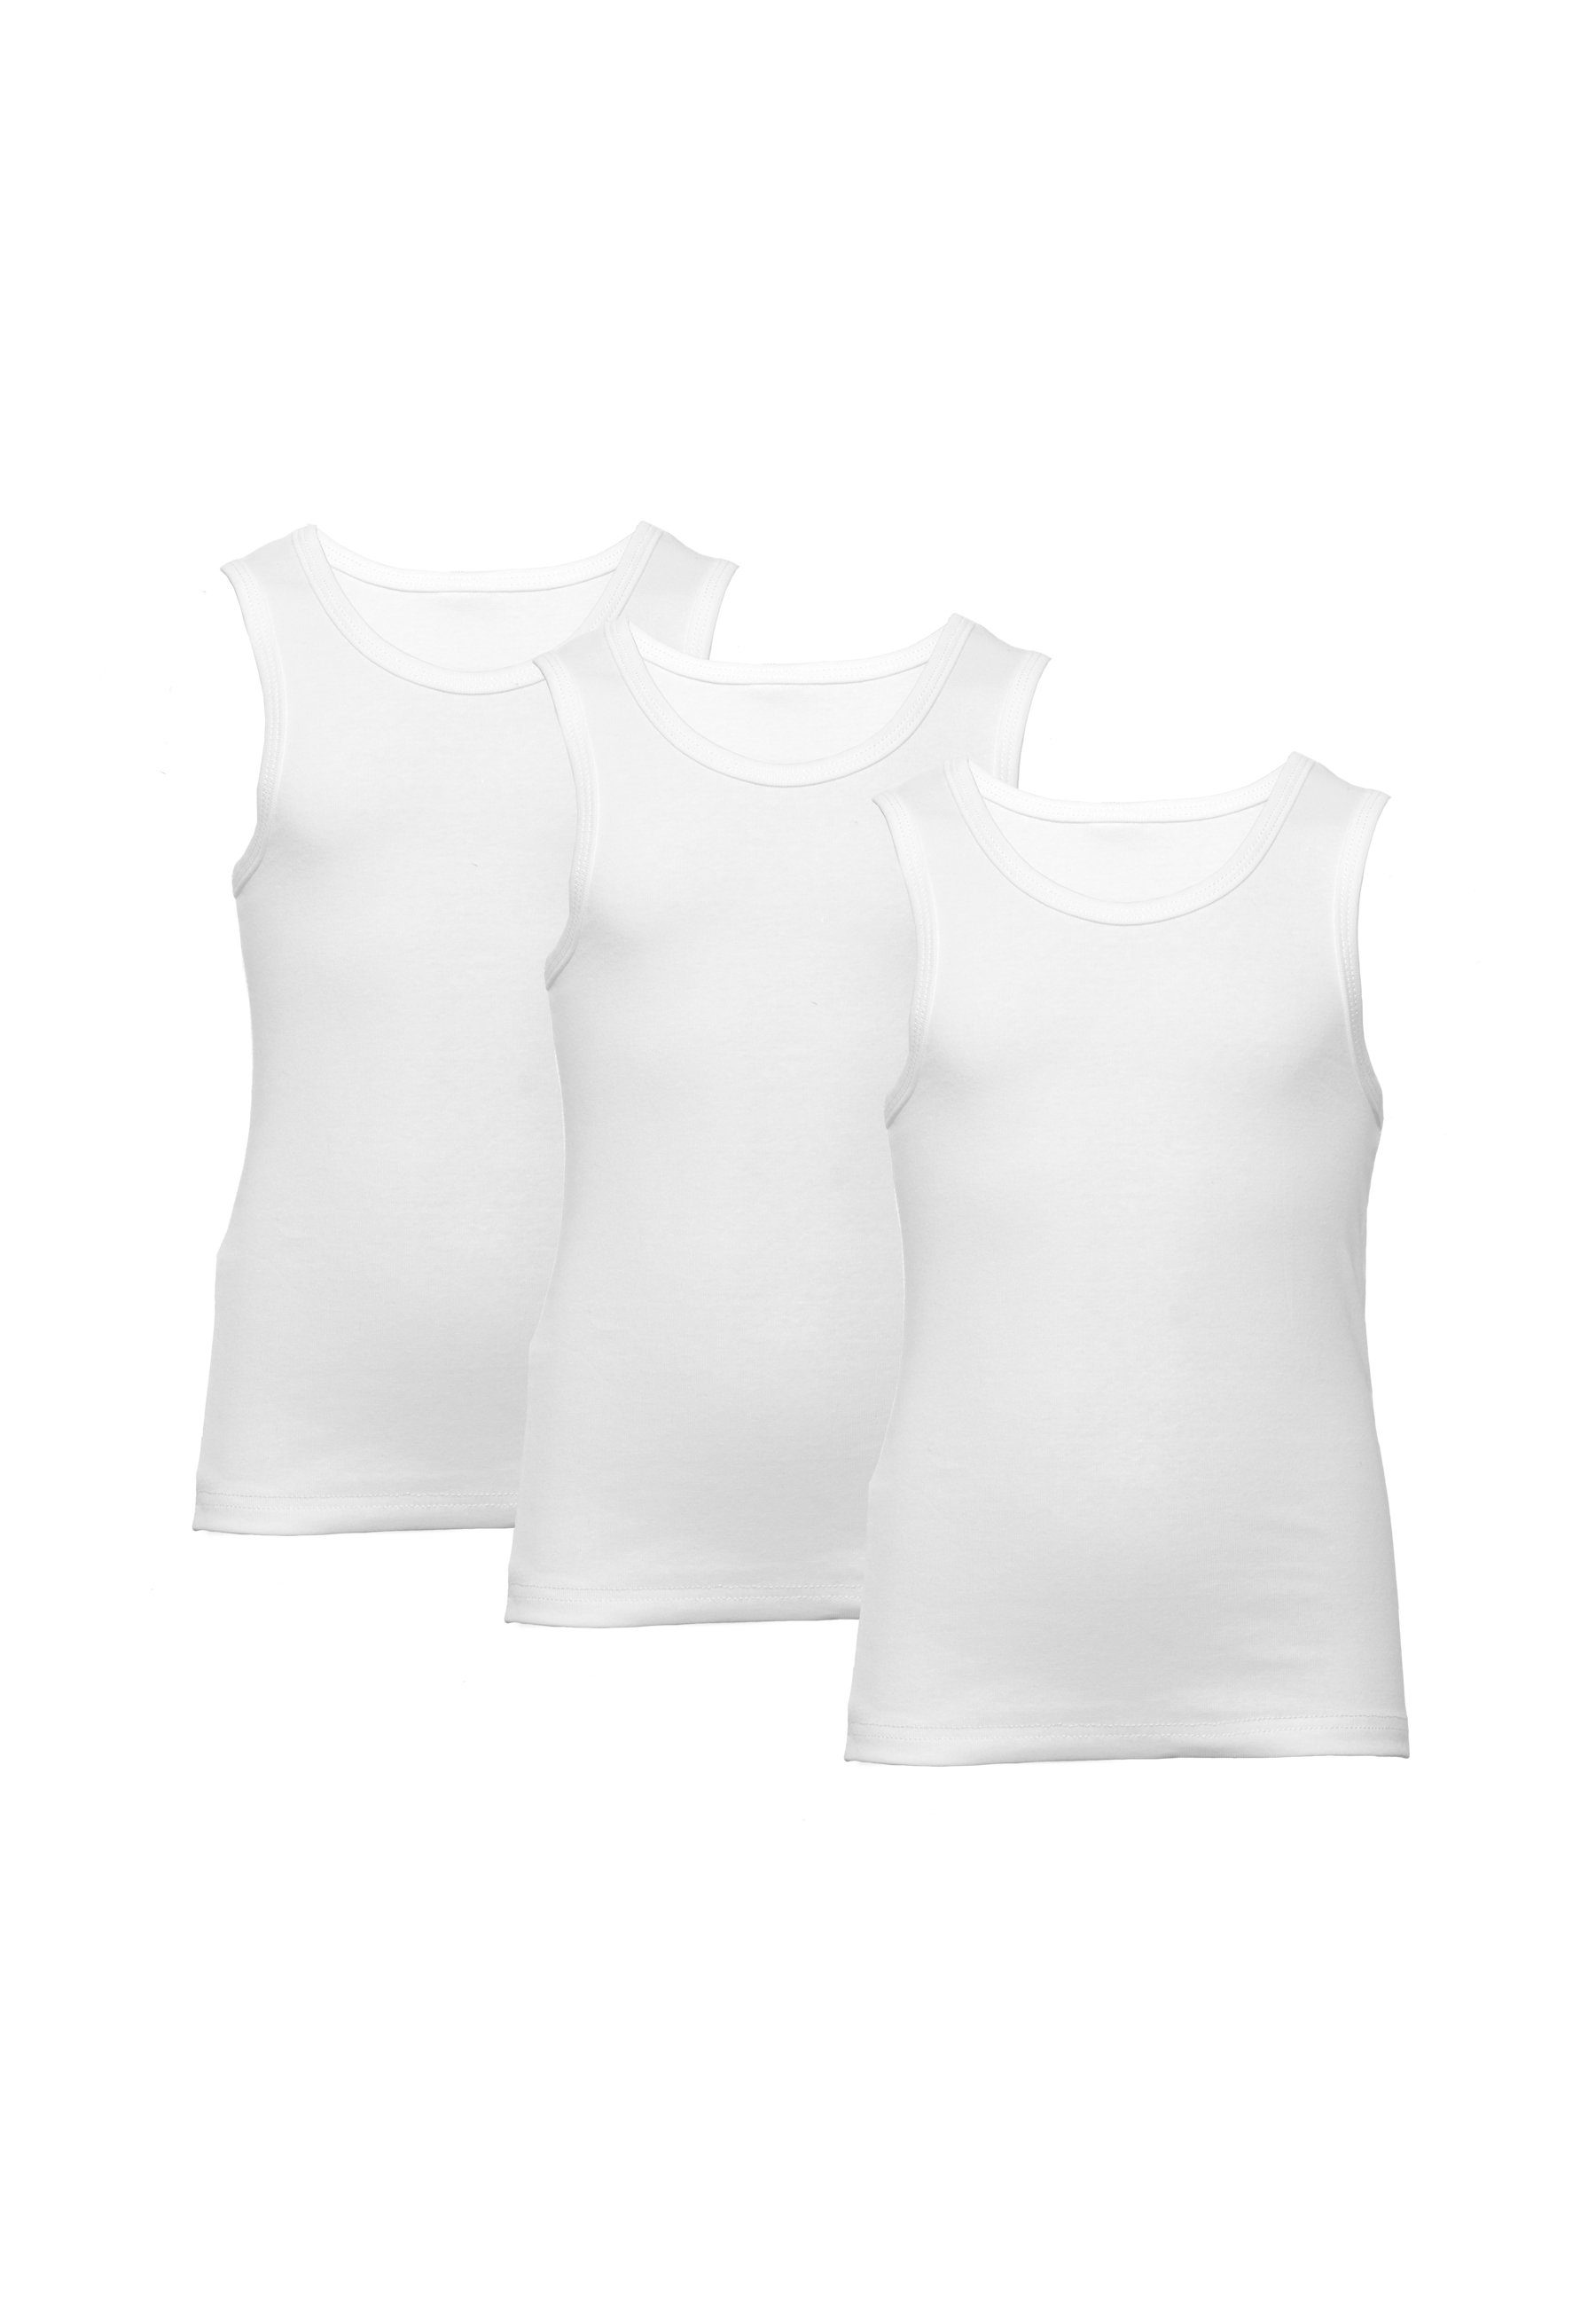 CARBURANT Unterhemd Unterhemden für Jungen, 3er-Pack, Weiß aus reiner Baumwolle | Unterhemden